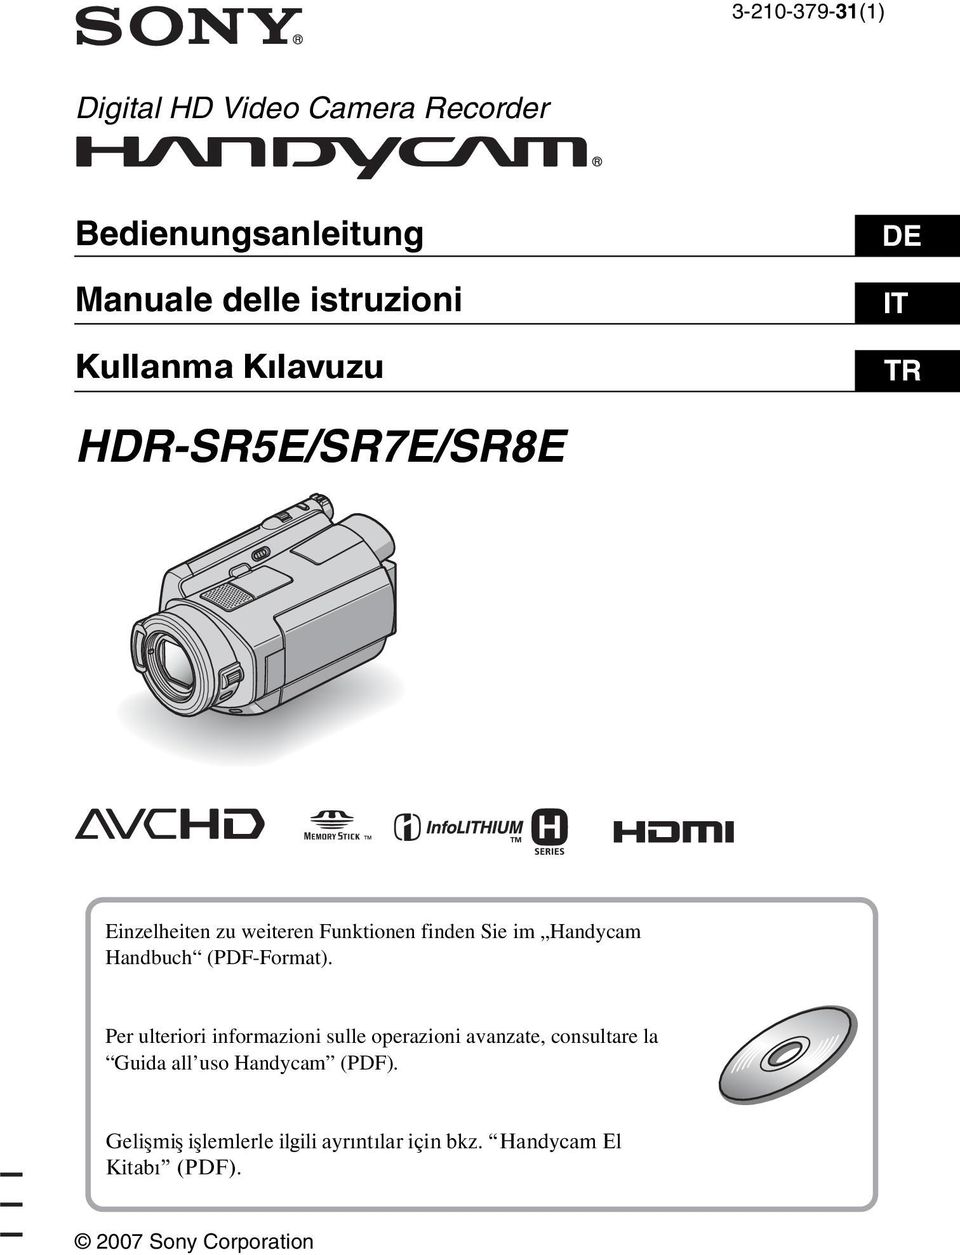 Handbuch (PDF-Format).